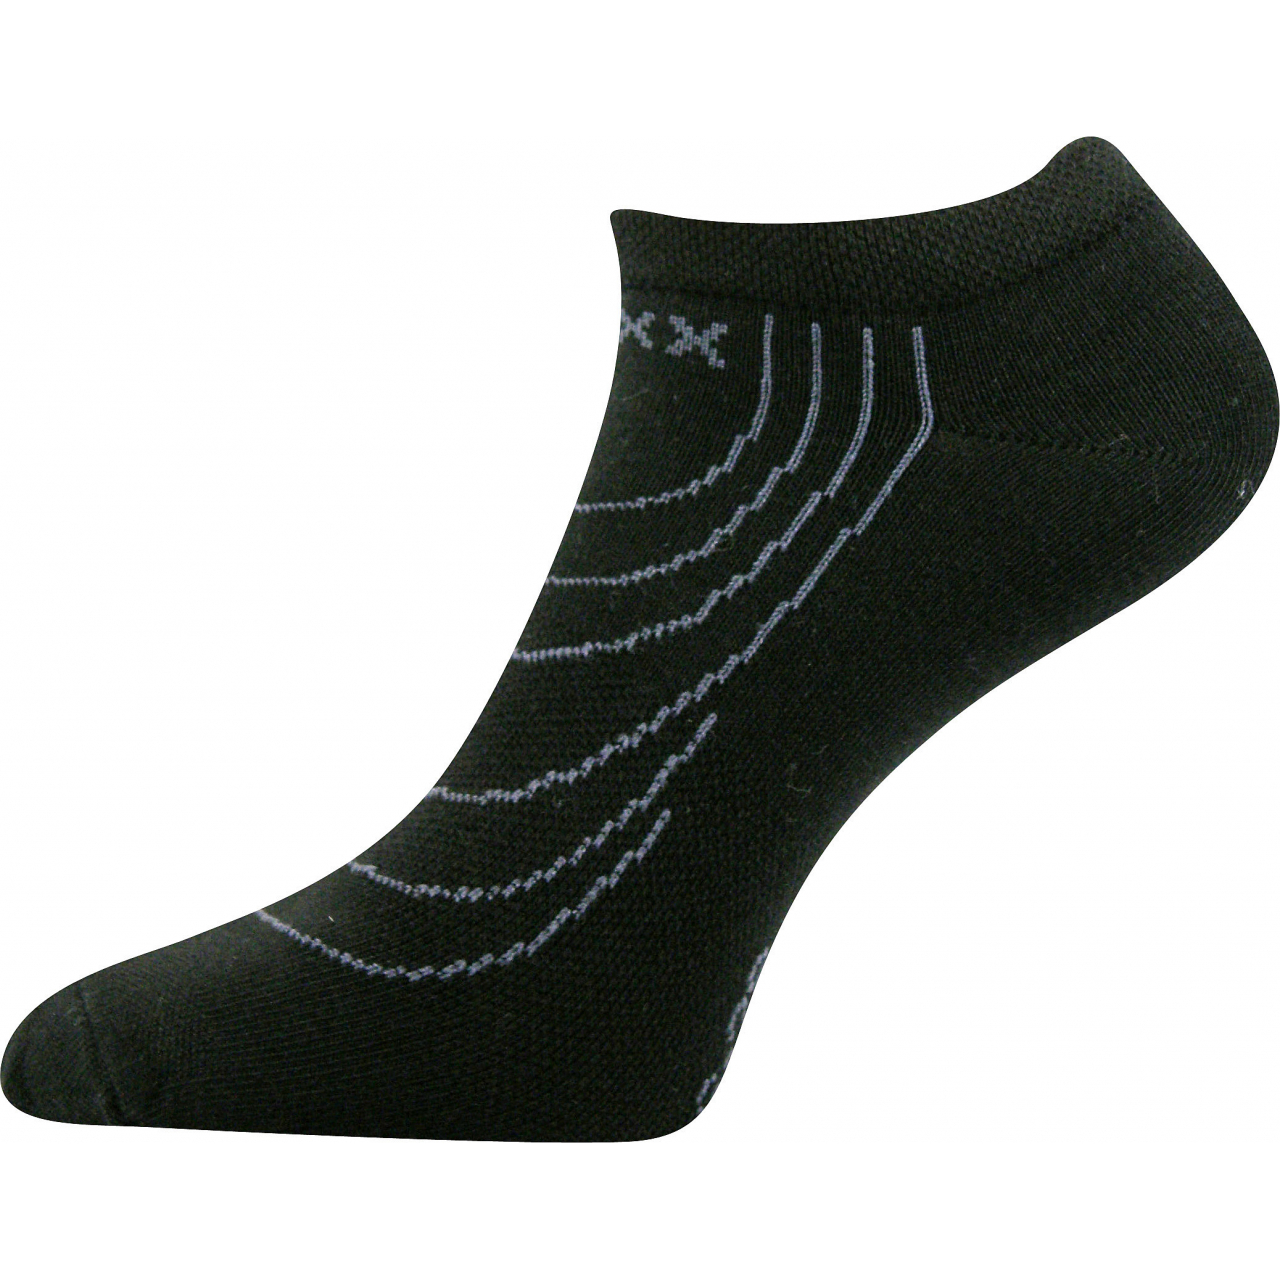 Ponožky nízké Voxx Rex - černé, 43-46